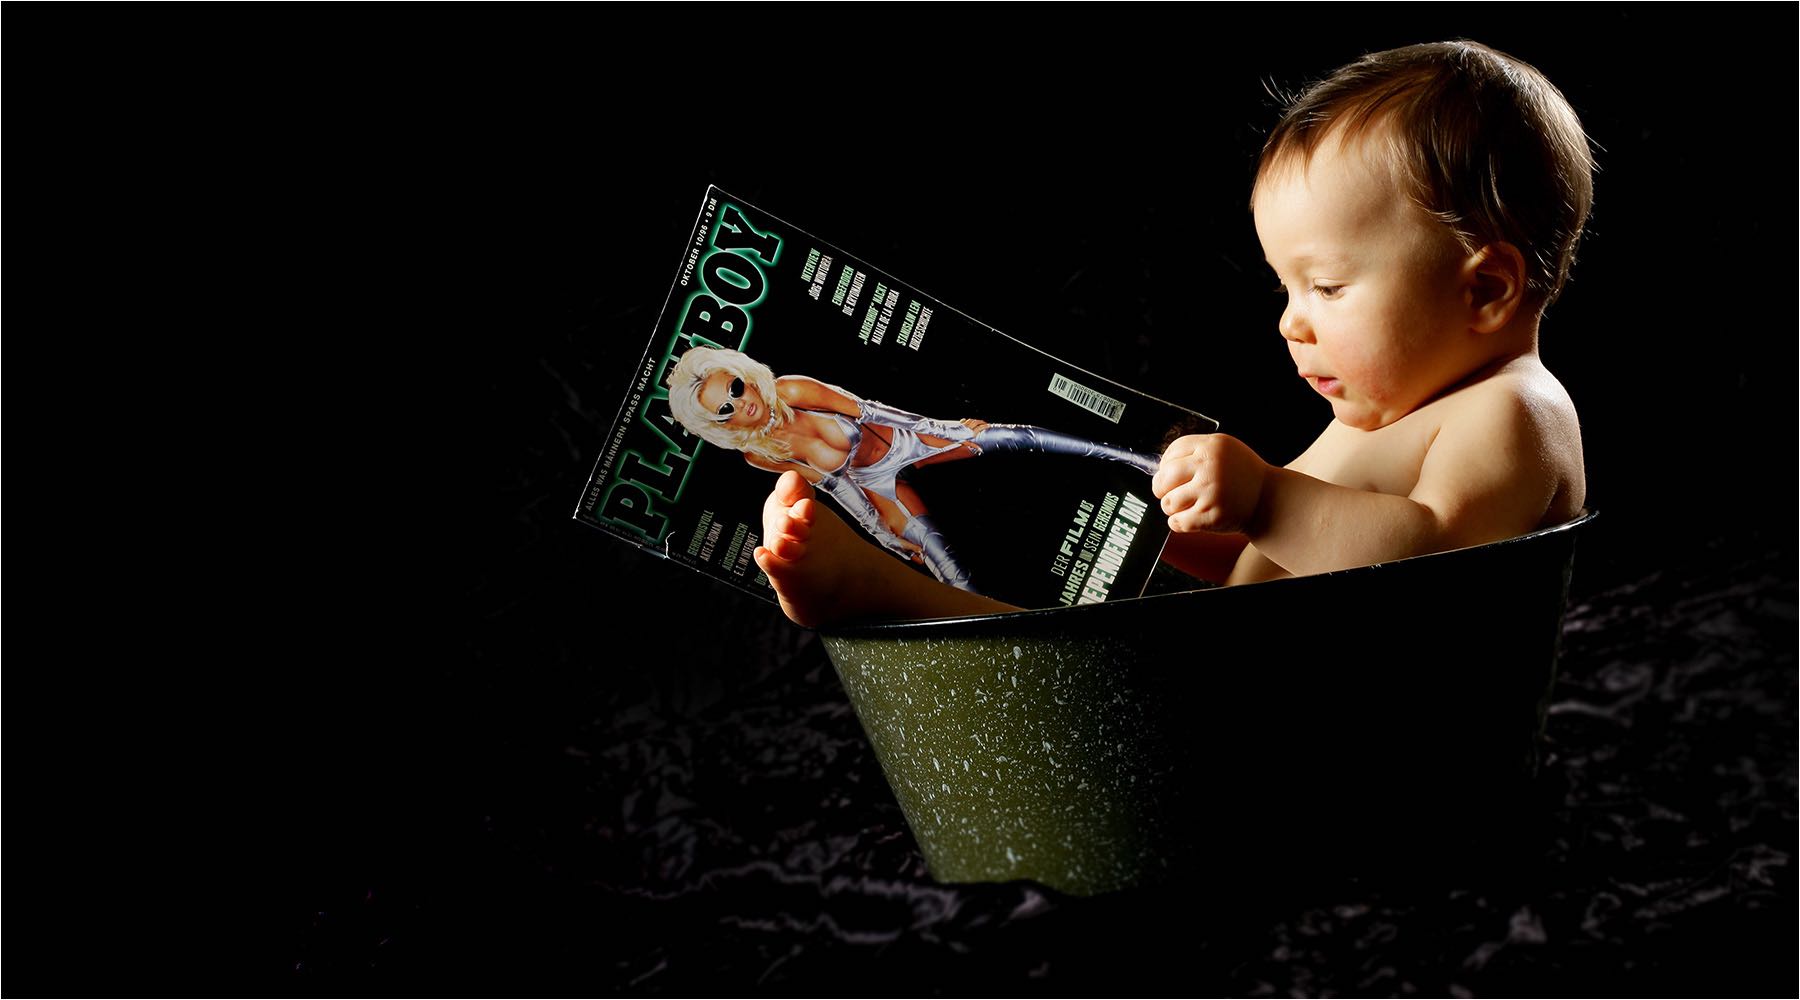  Schwangeren & Babyfotografie. Witziges Portrait eines Kleinkindes mit einer Erwachsenen Zeitschrift in einer Blechwanne sitzend. Studioaufnahme vor dunklem Hintergrund. Copyright by Fotostudio Jörg Riethausen 